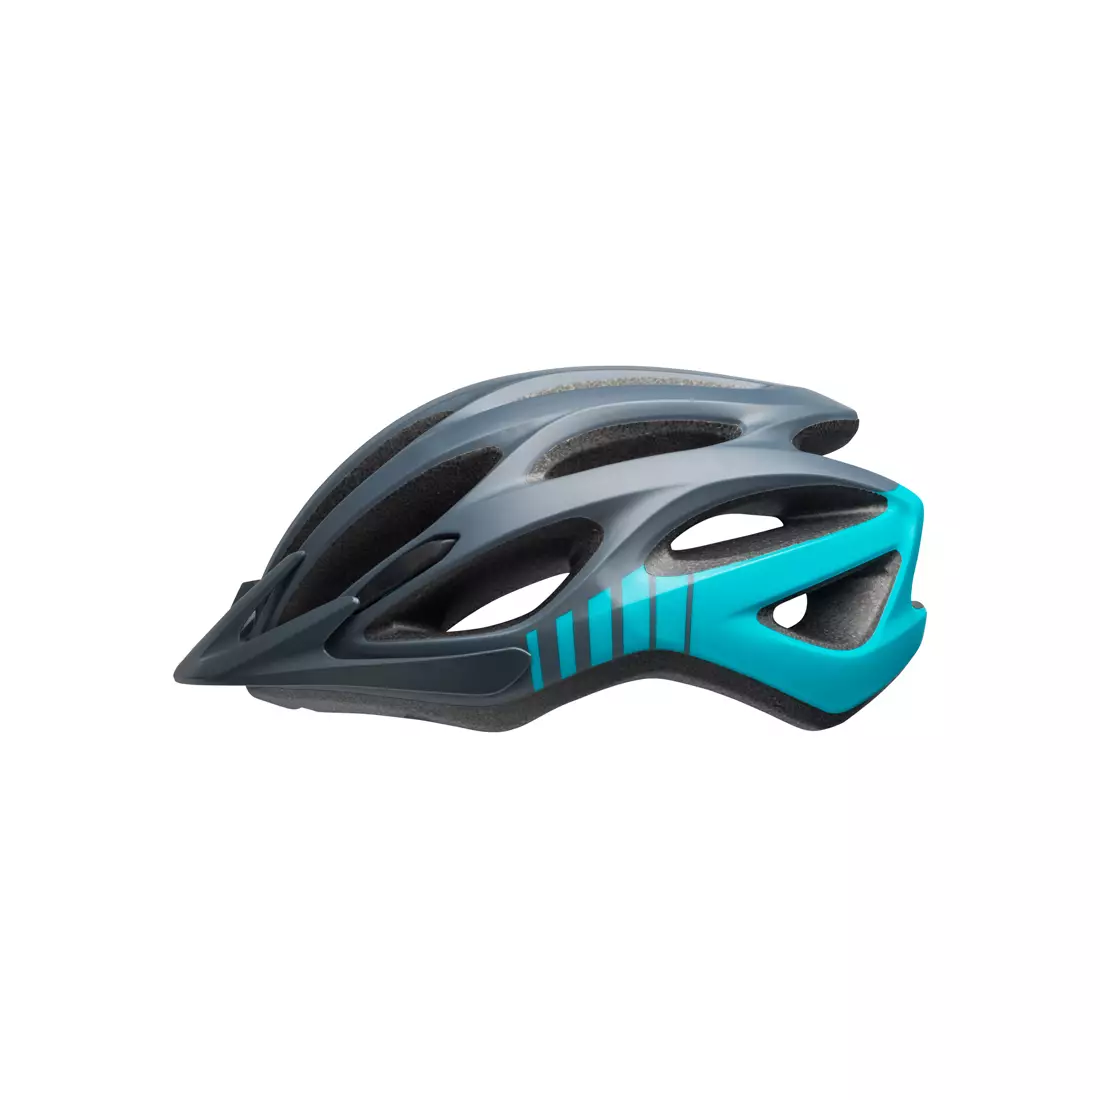 BELL MTB TRAVERSE BEL-7087810 matte lead tropic bicycle helmet